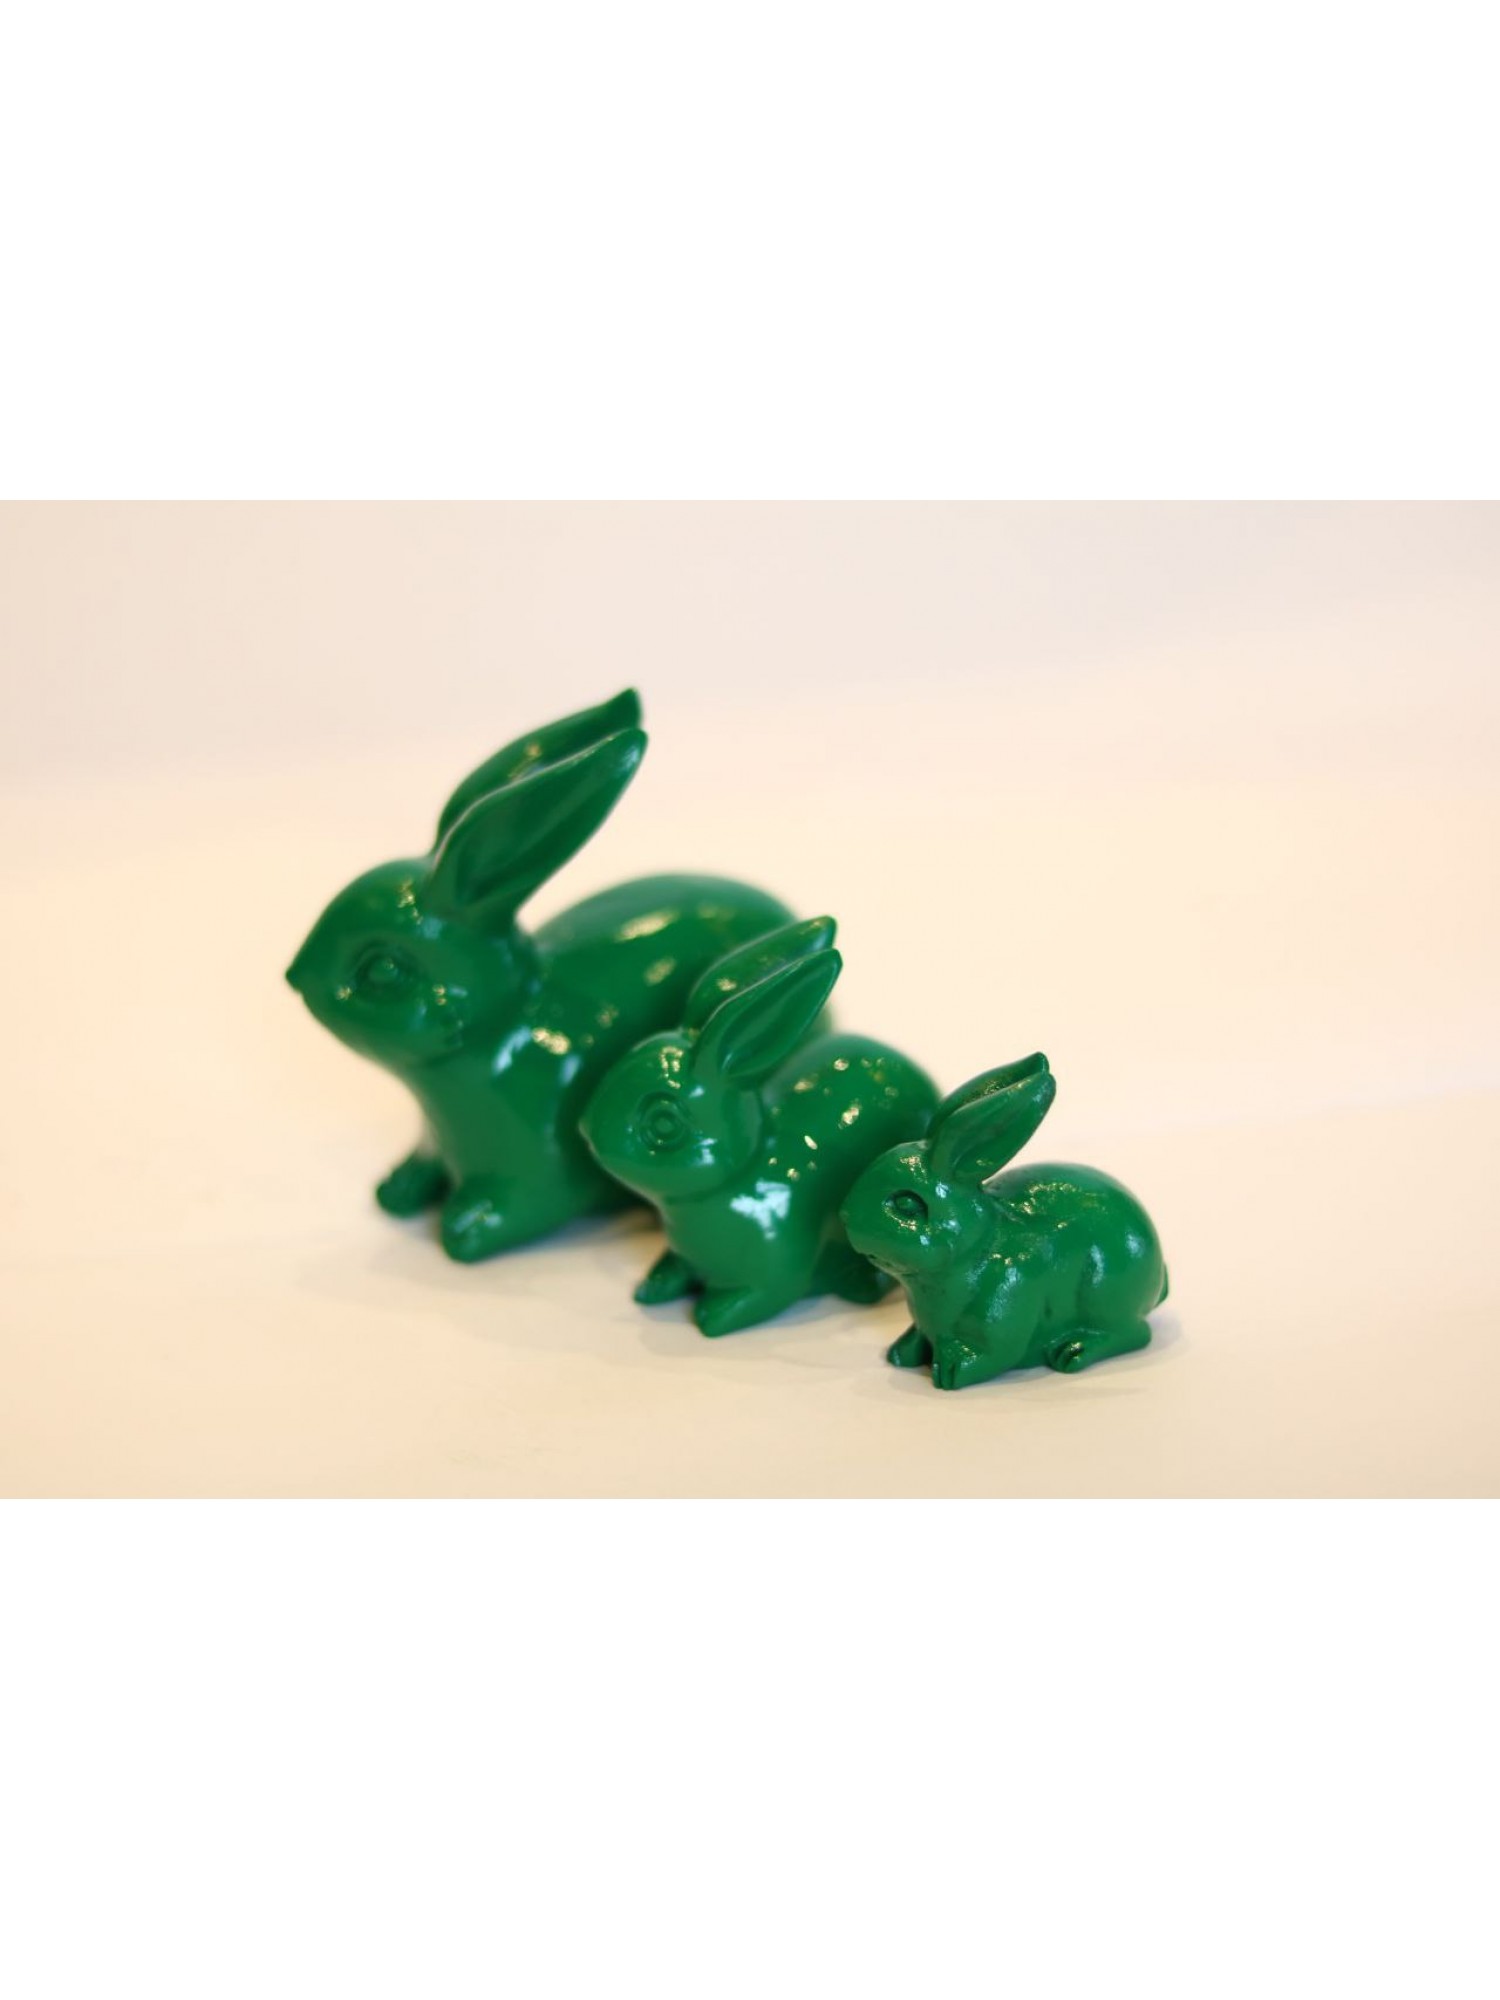 Статуэтка «Кролик зеленый» из дерева (большой) - поможет сохранить гармоничные отношения в вашей семье!